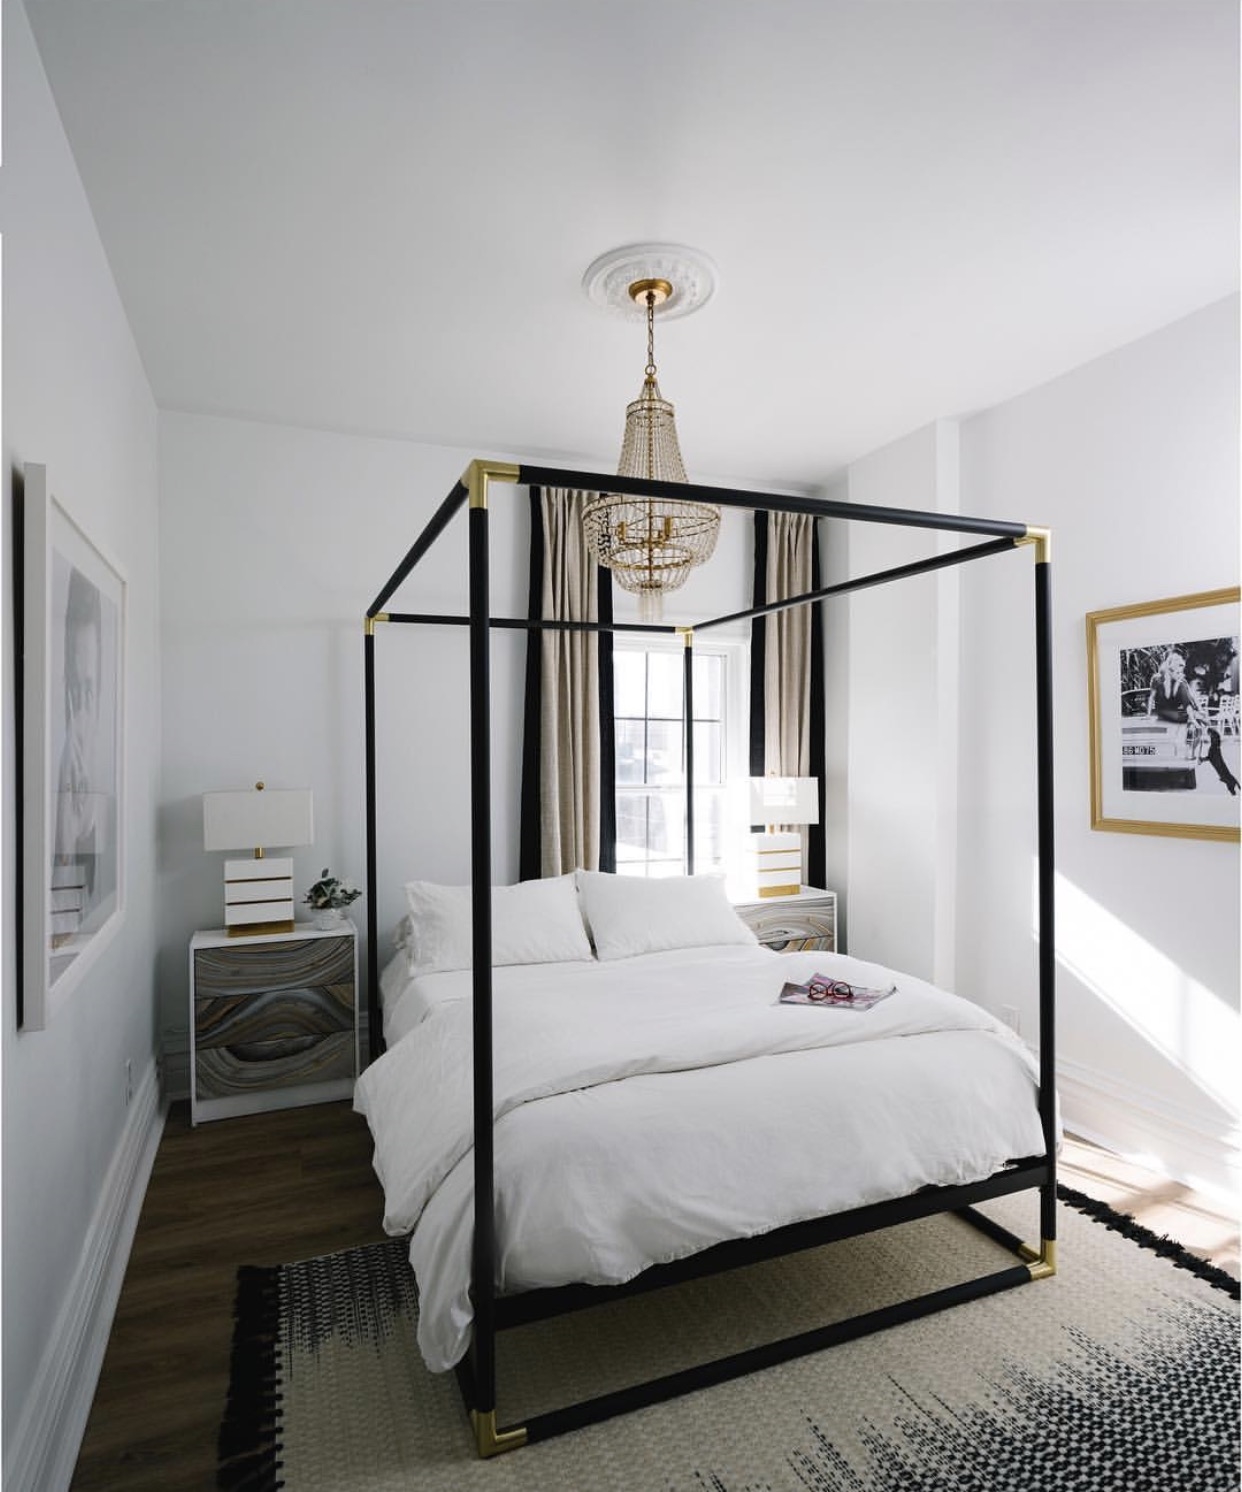 5 правил дизайна узкой длинной спальни, которые помогут устранить недостатки планировки